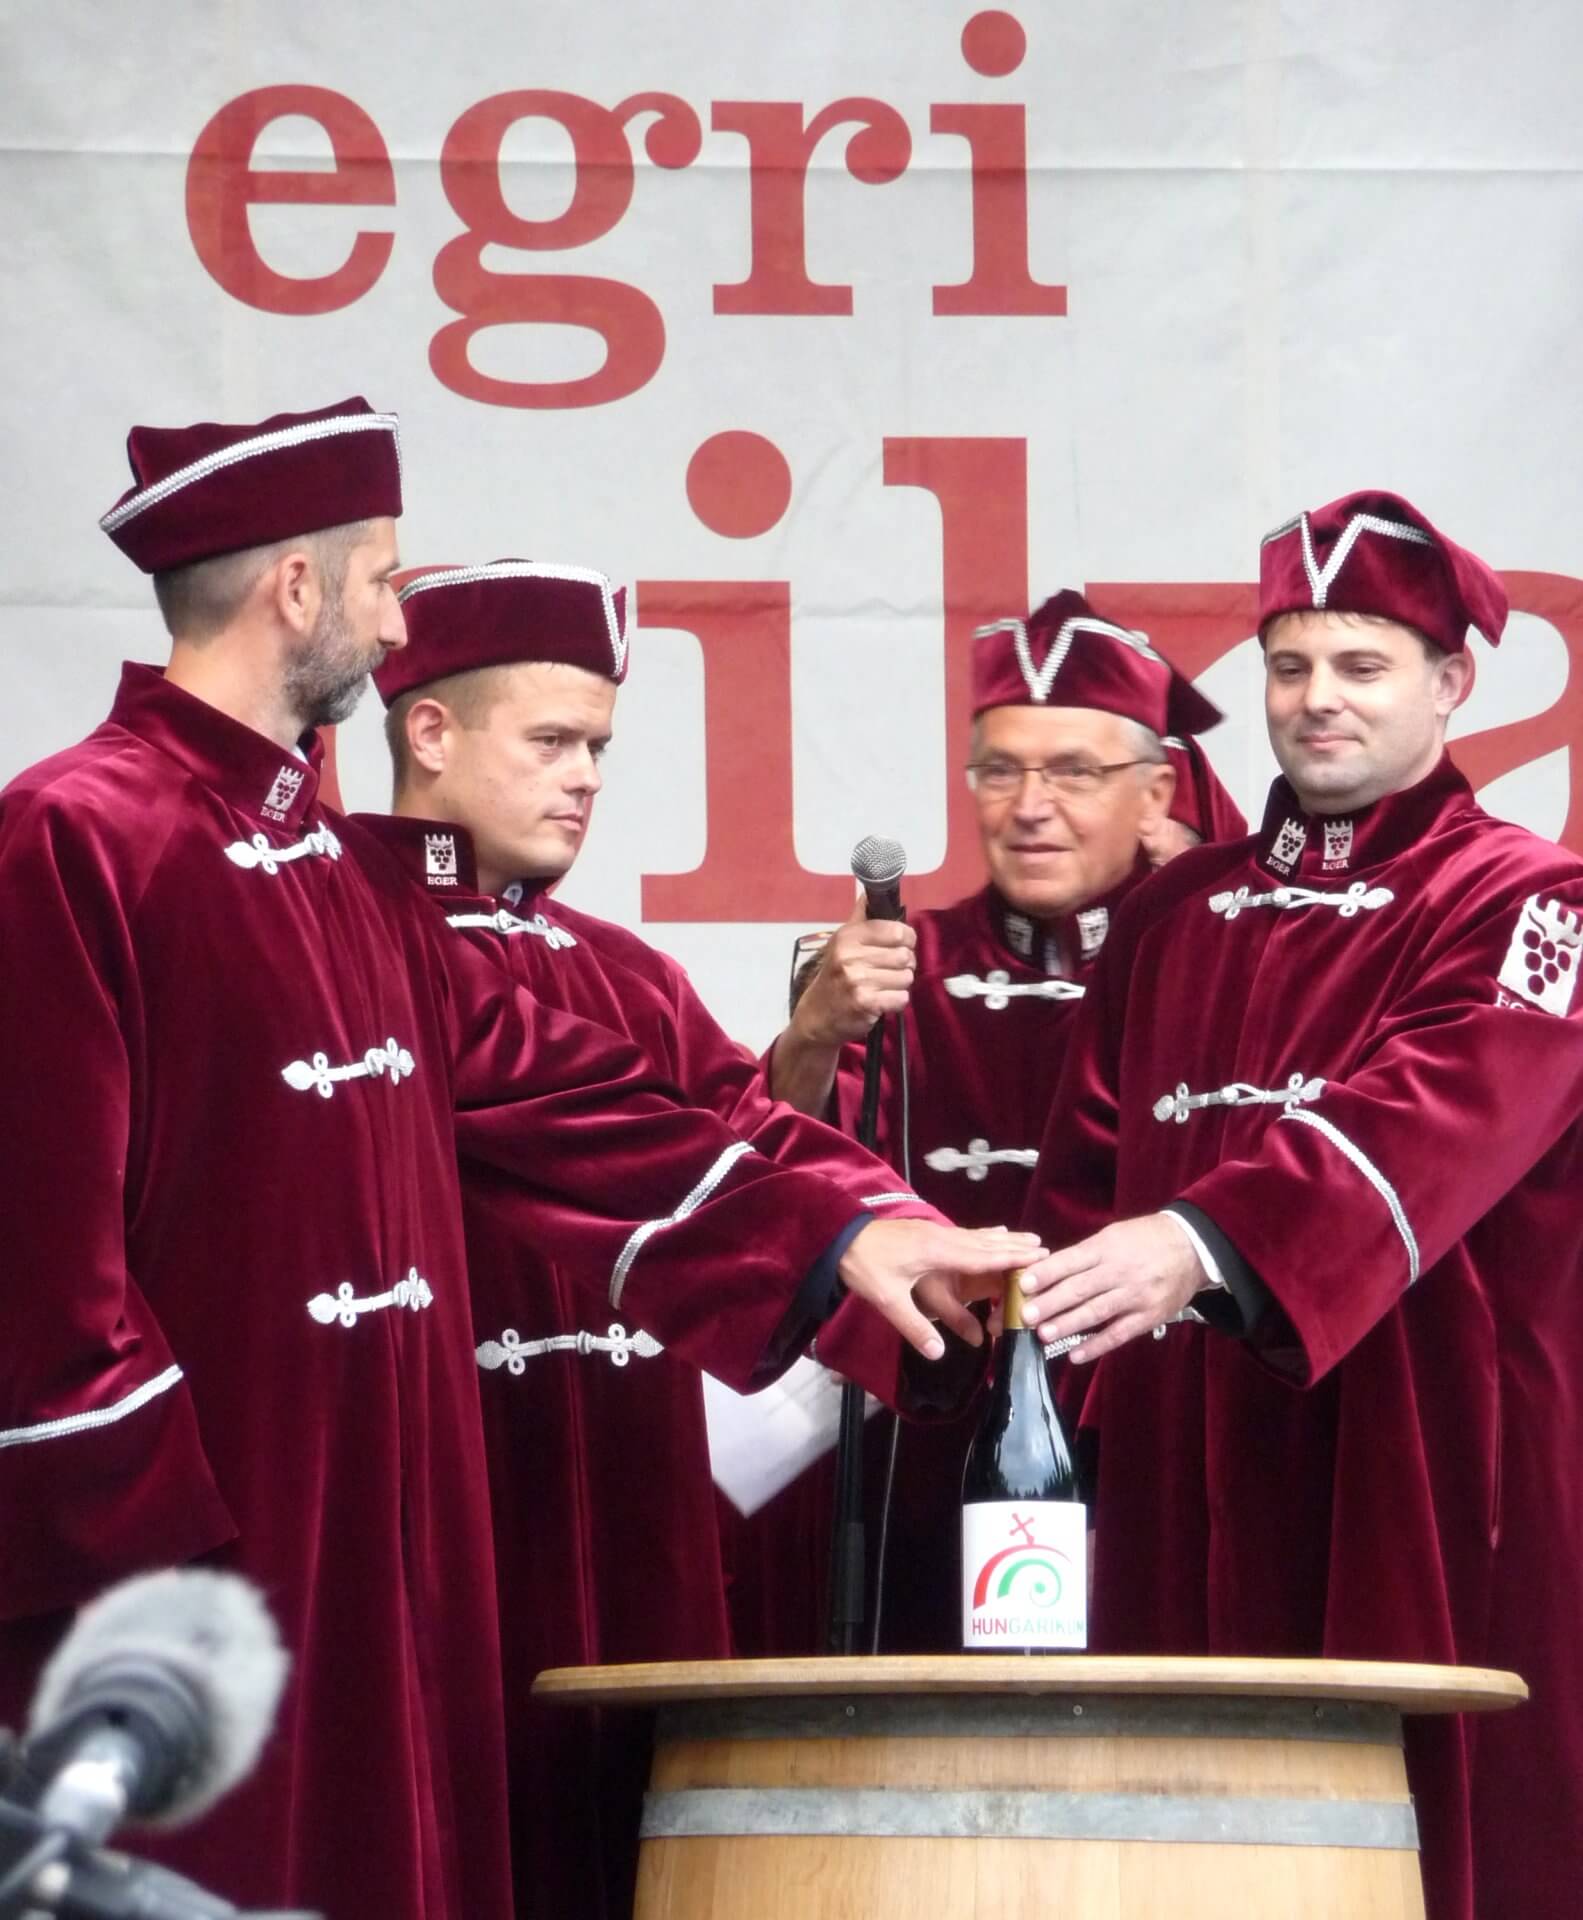 Zeremonie auf dem Weinfest Eger